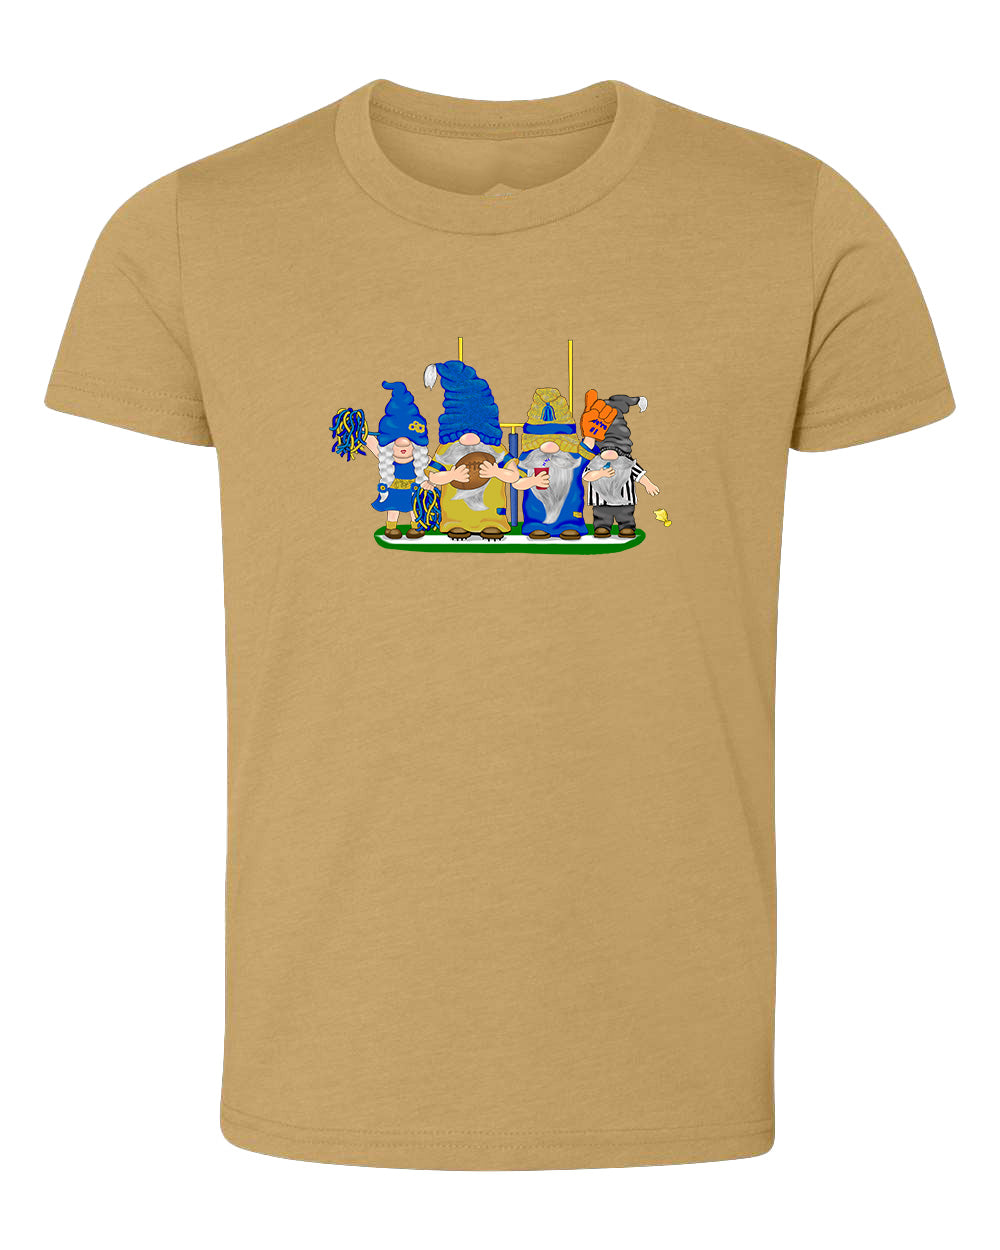 Blue & Gold Football Gnomes  (similar to LA) on Kids T-shirt